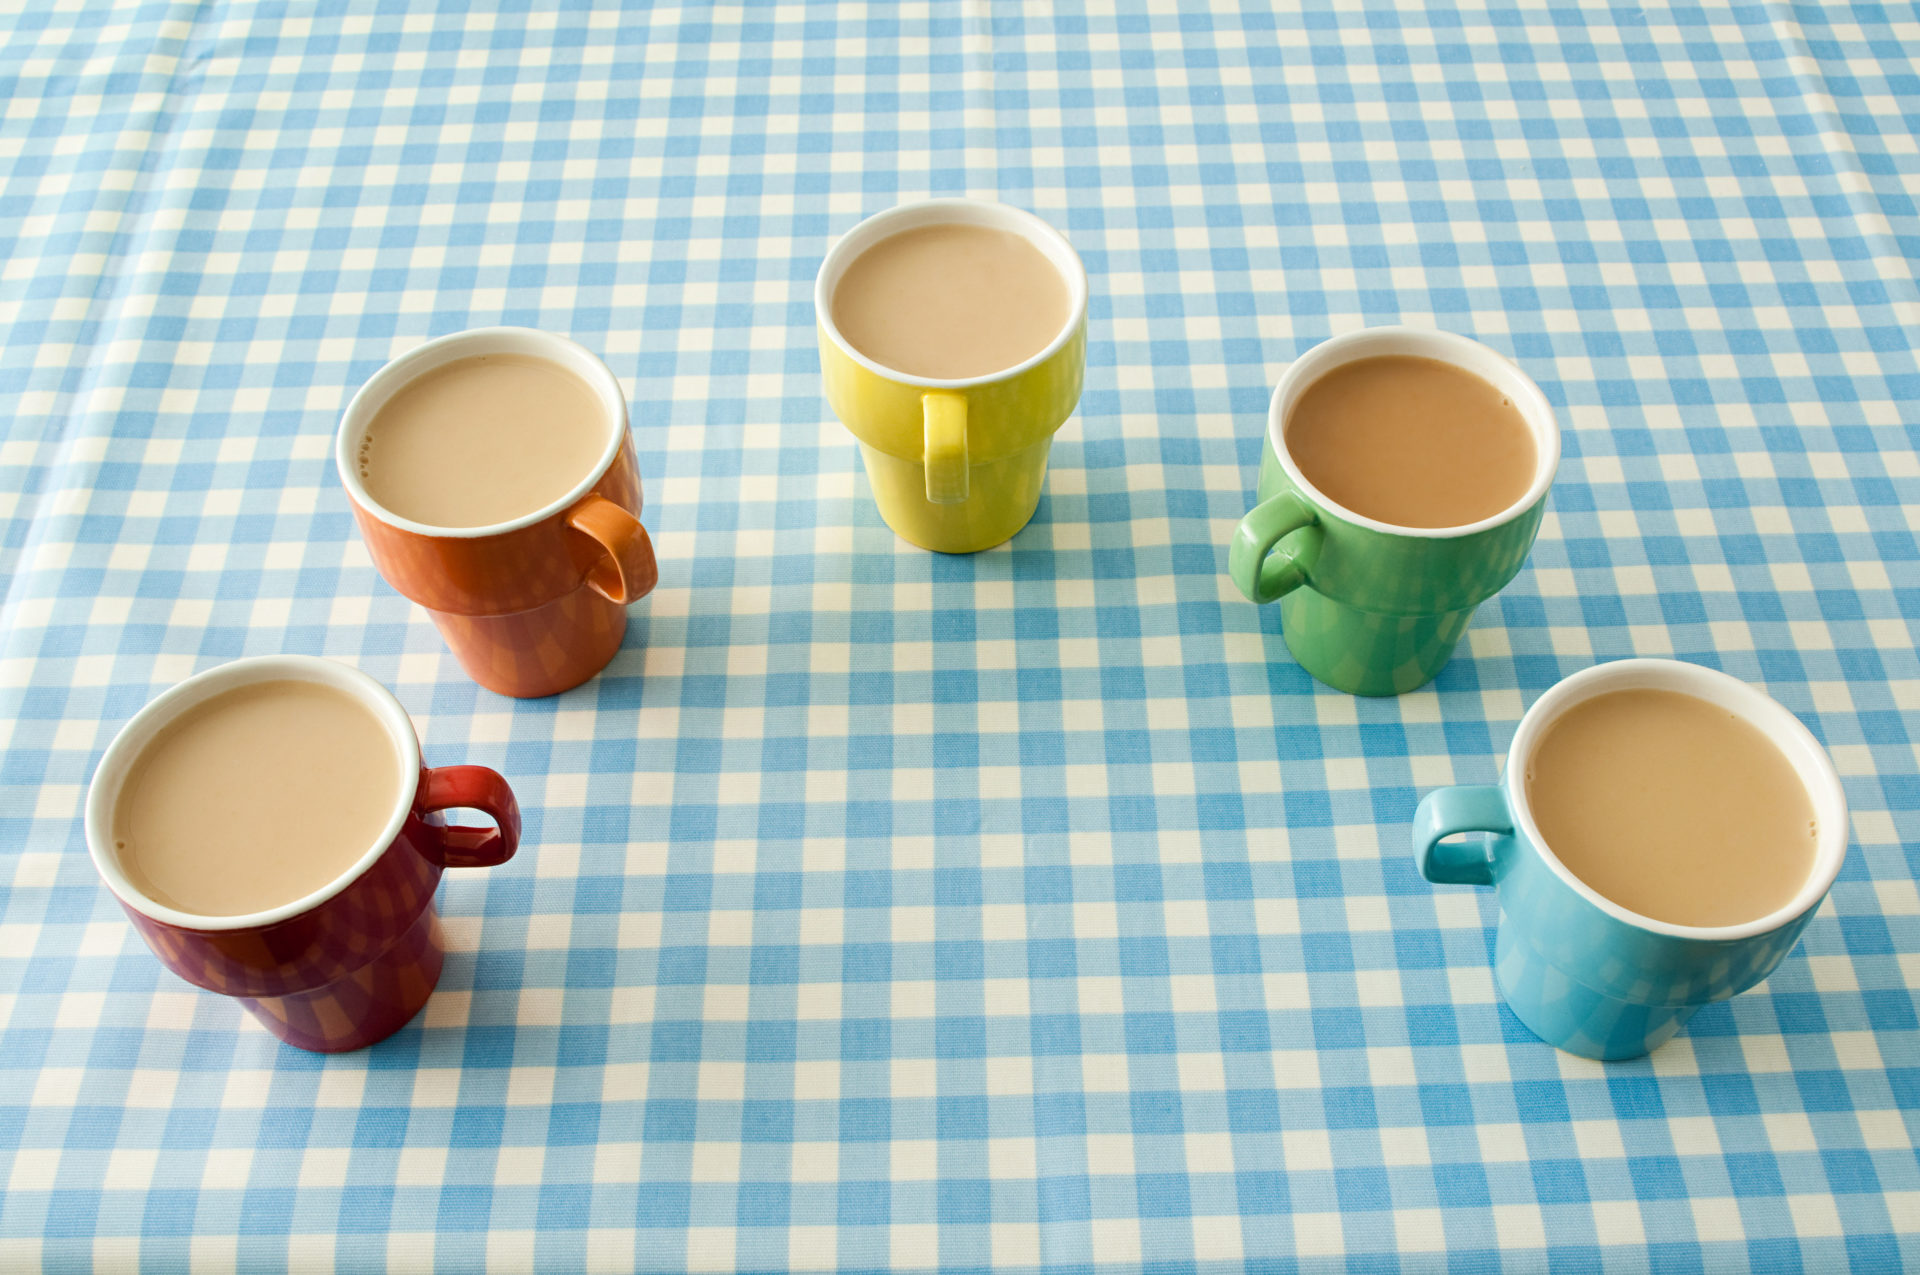 Five cups of tea making a U shape on a table.